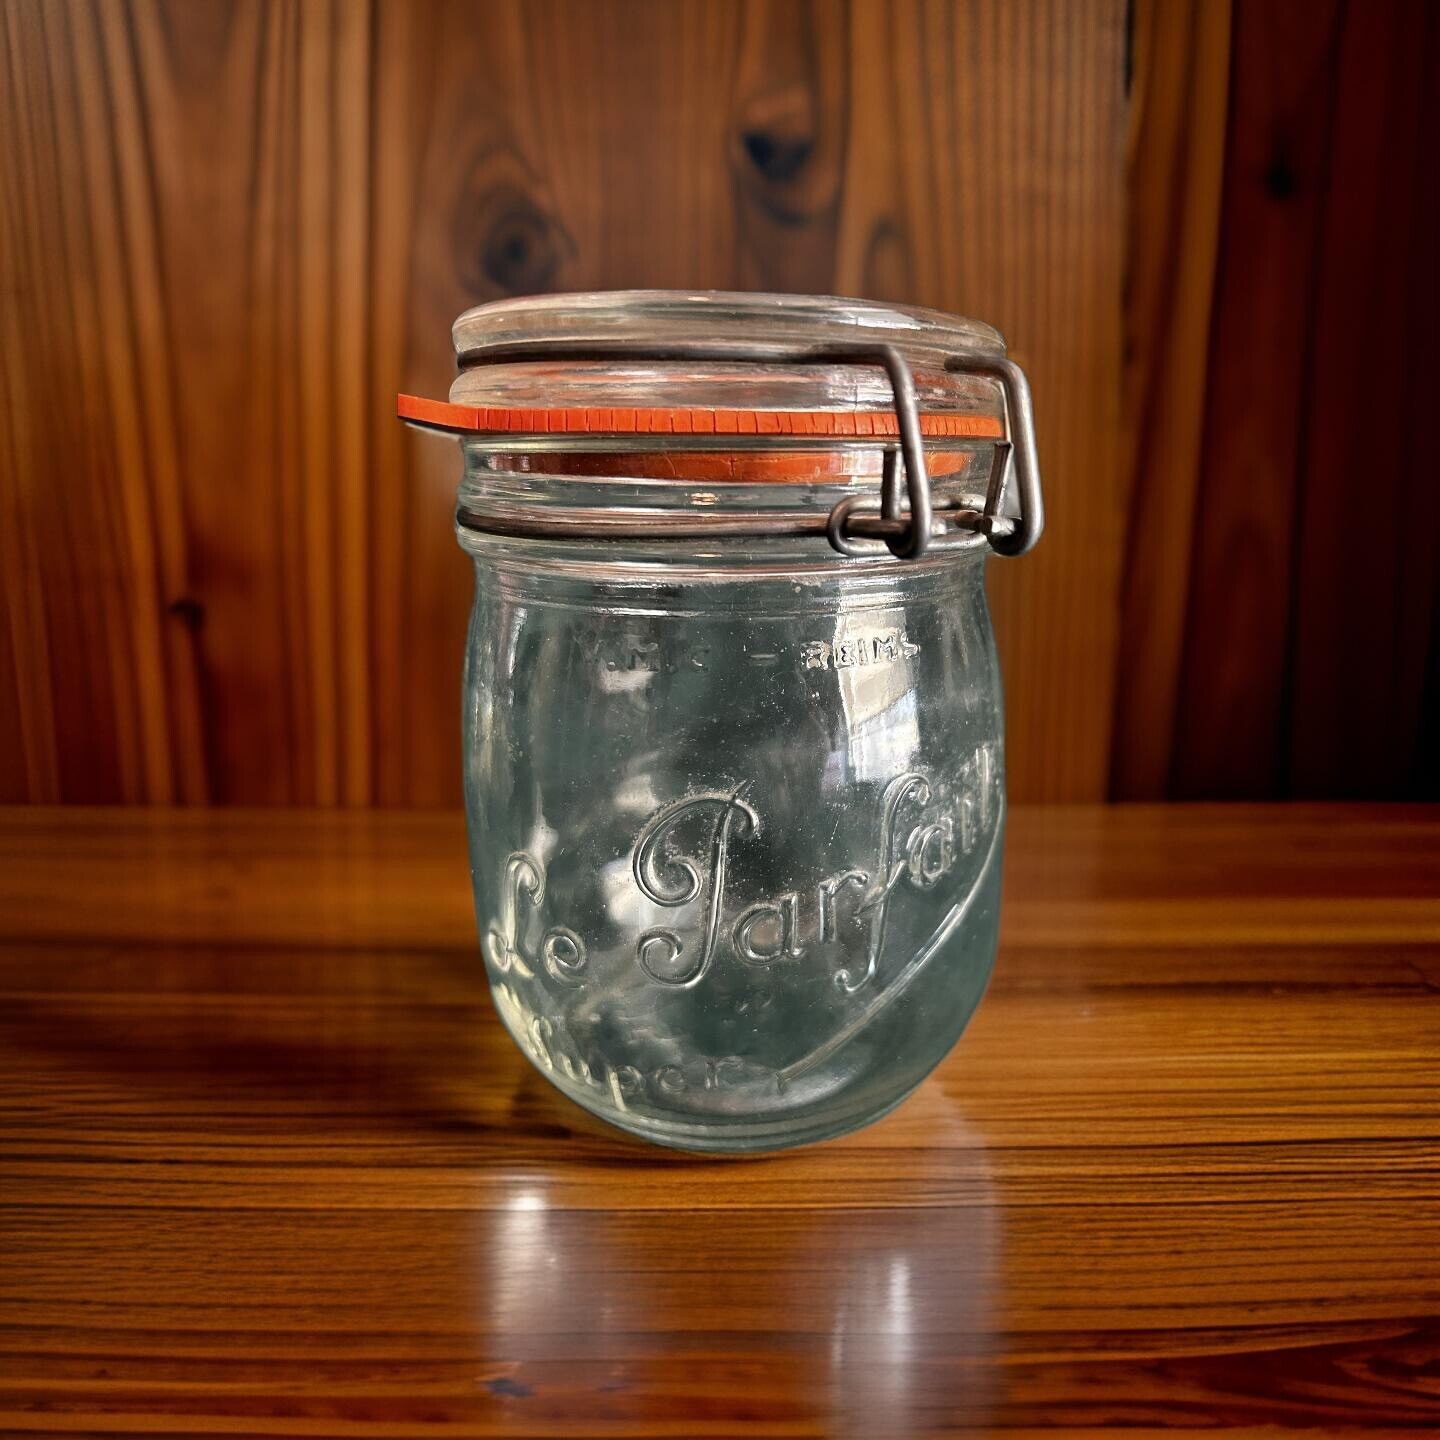 Le Parfait Super Vintage Jar Wire Bail Made In France .75 L